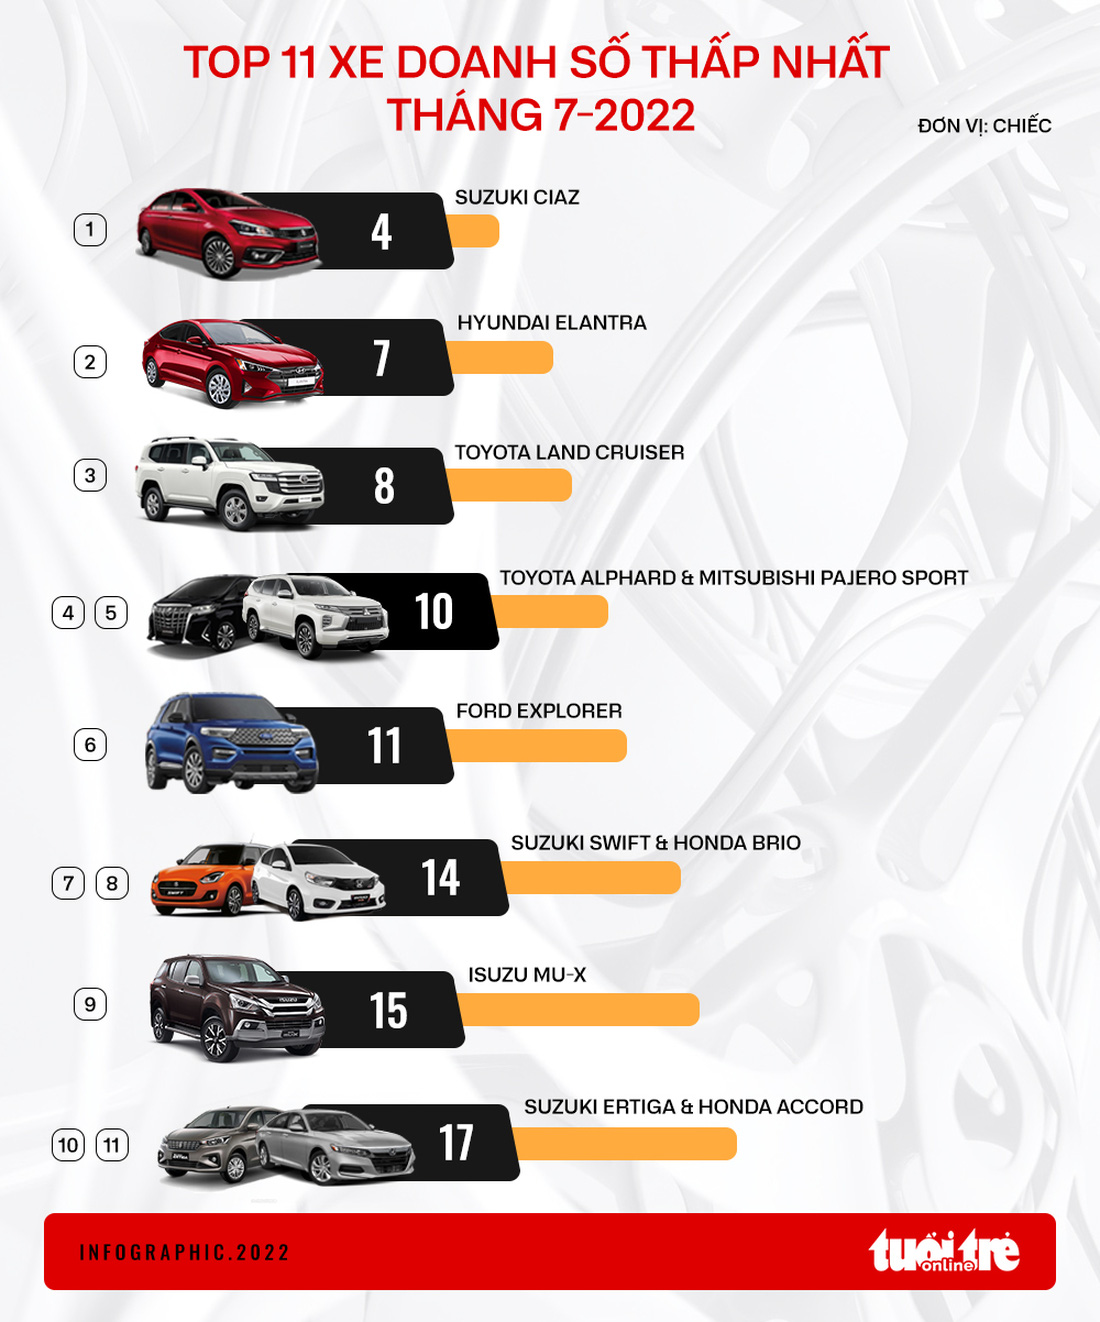 11 ôtô bán ít nhất tháng 7: Đa số xe Nhật, Suzuki chiếm tới 3 vị trí - Ảnh 1.